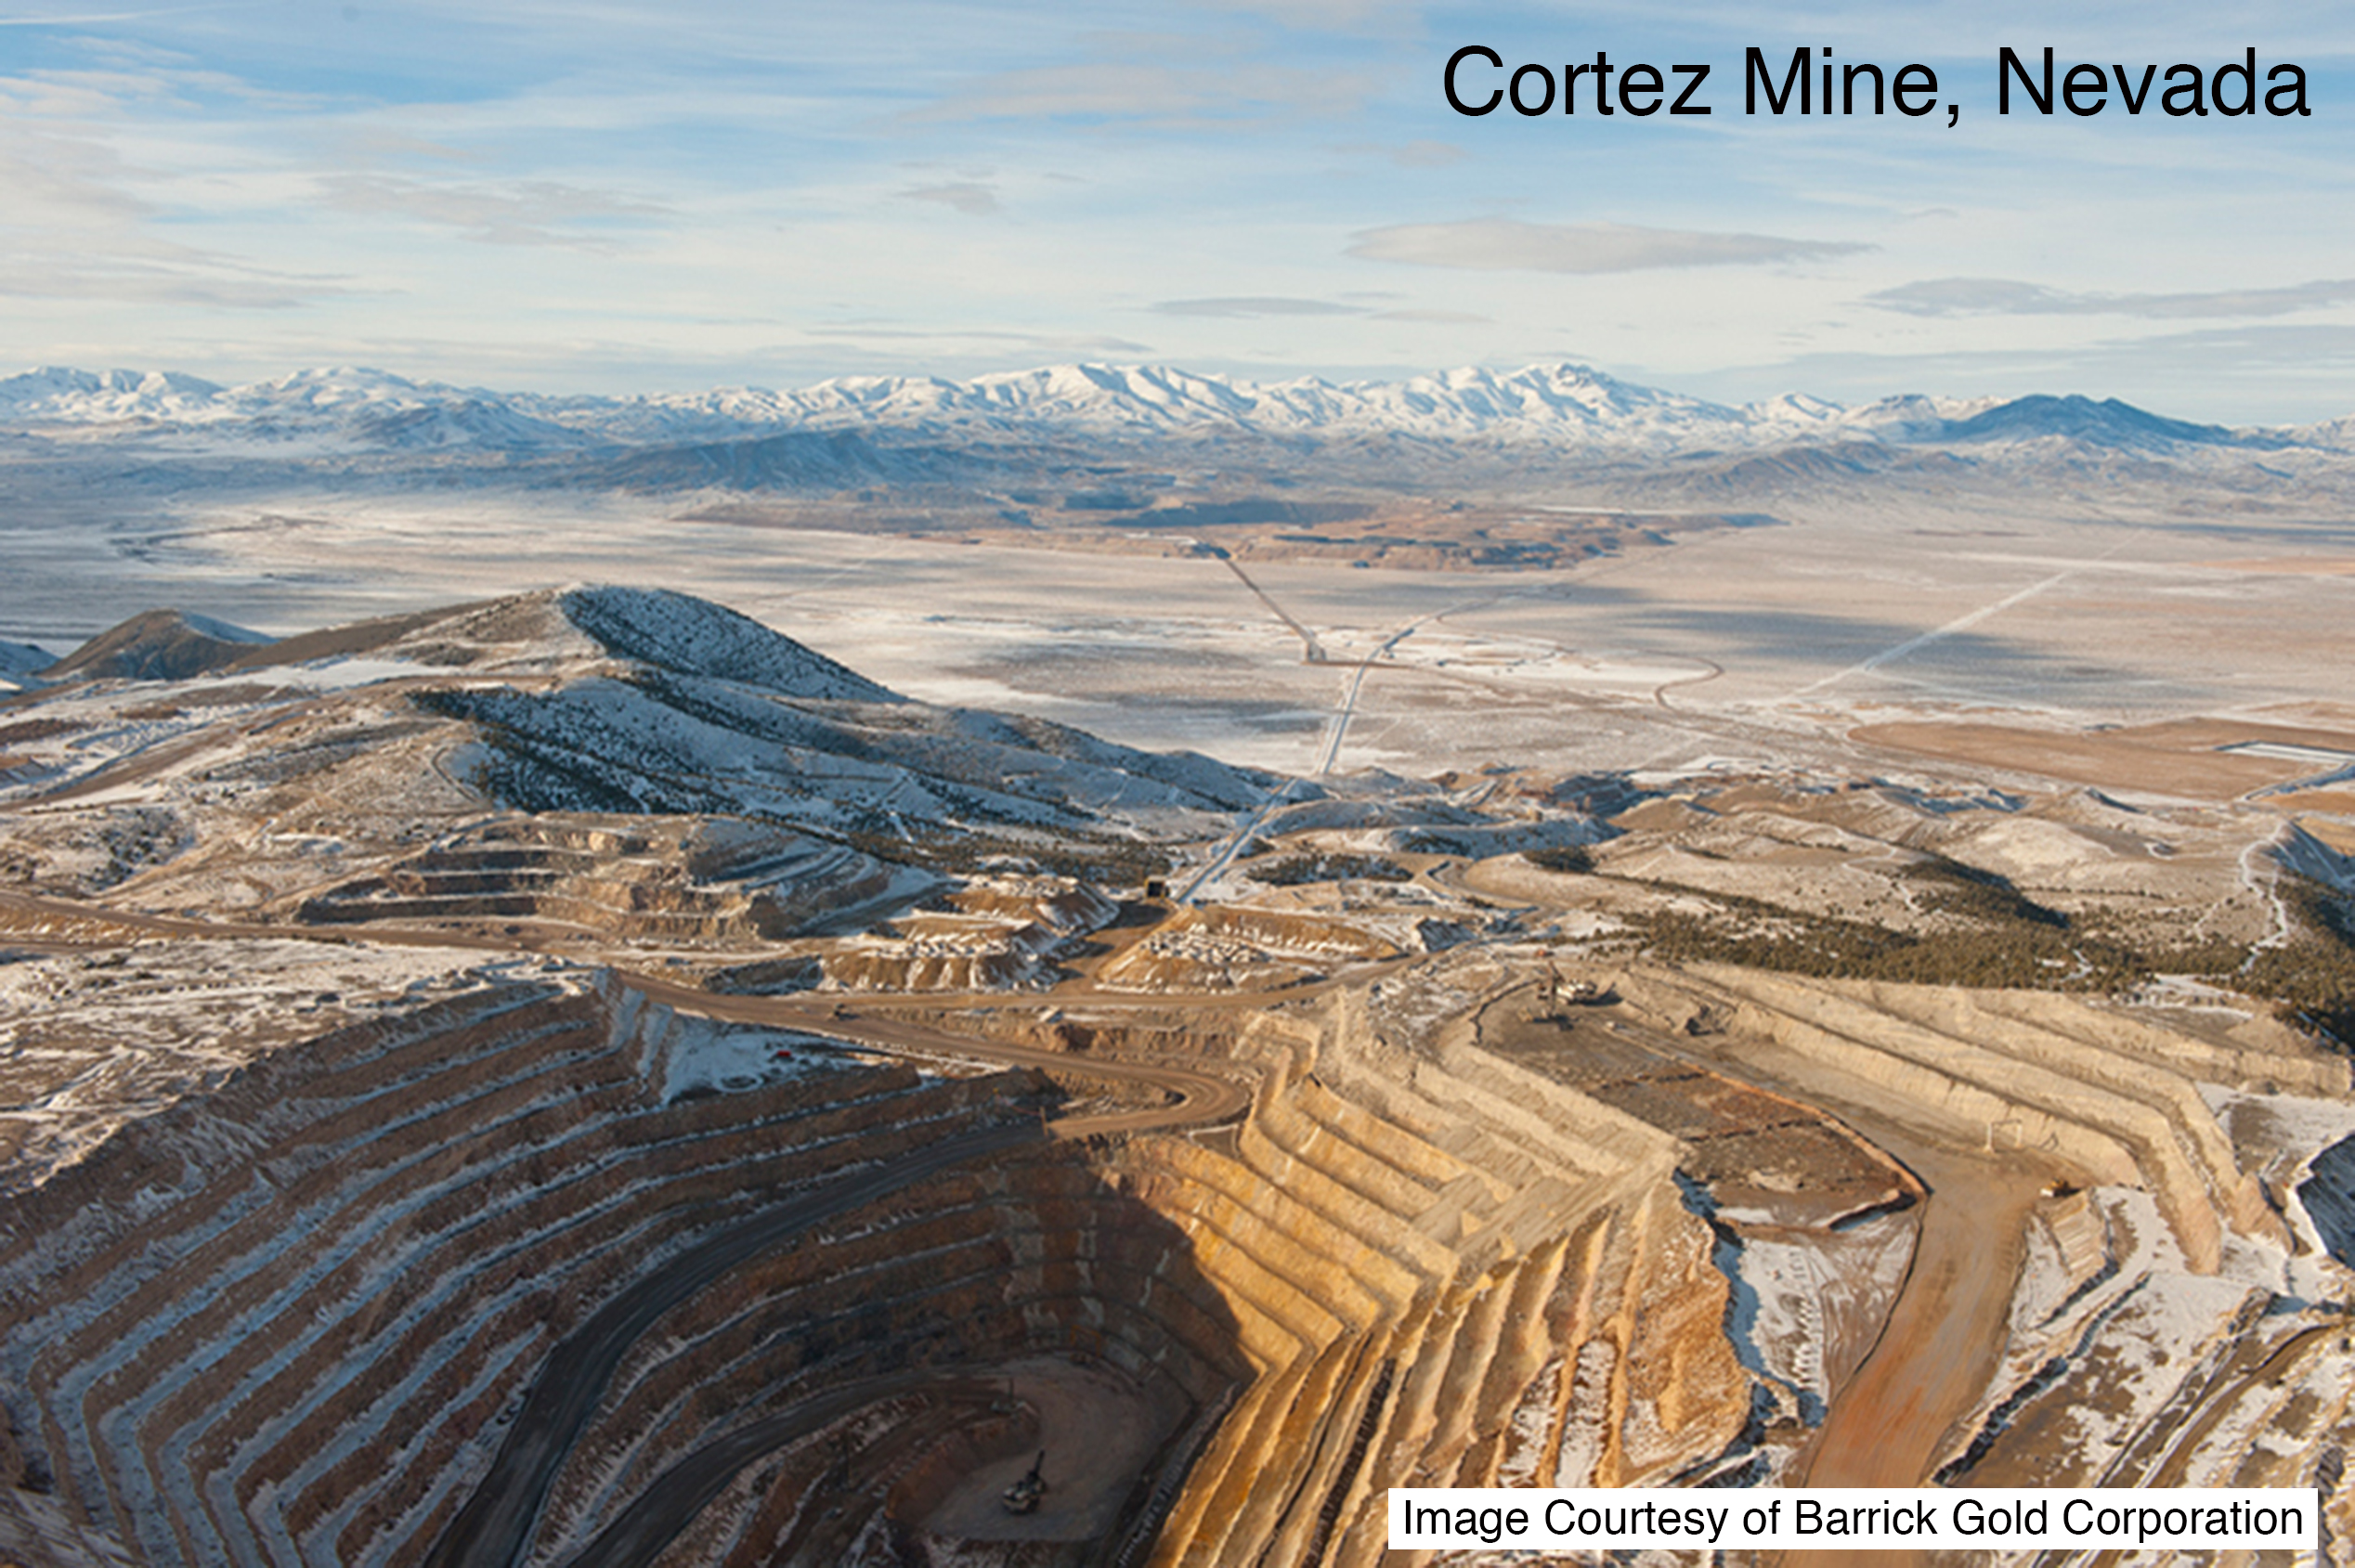 Cortez Mine